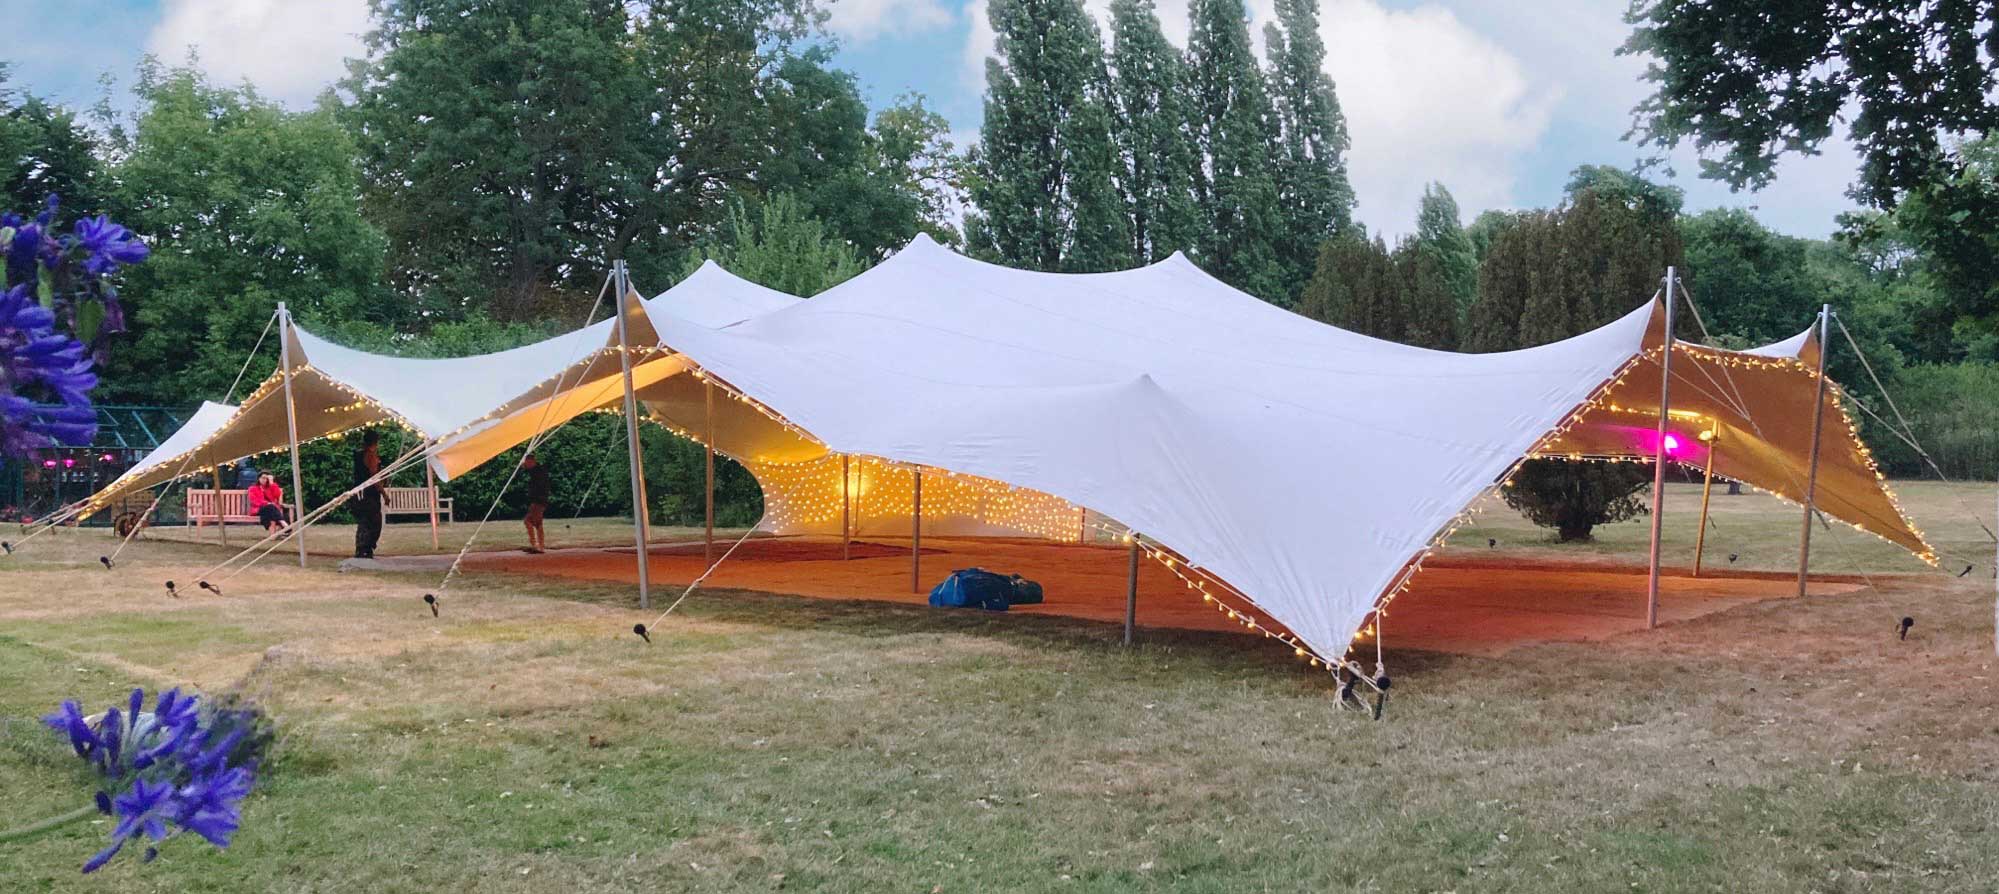 Big wedding tent on a lawn.